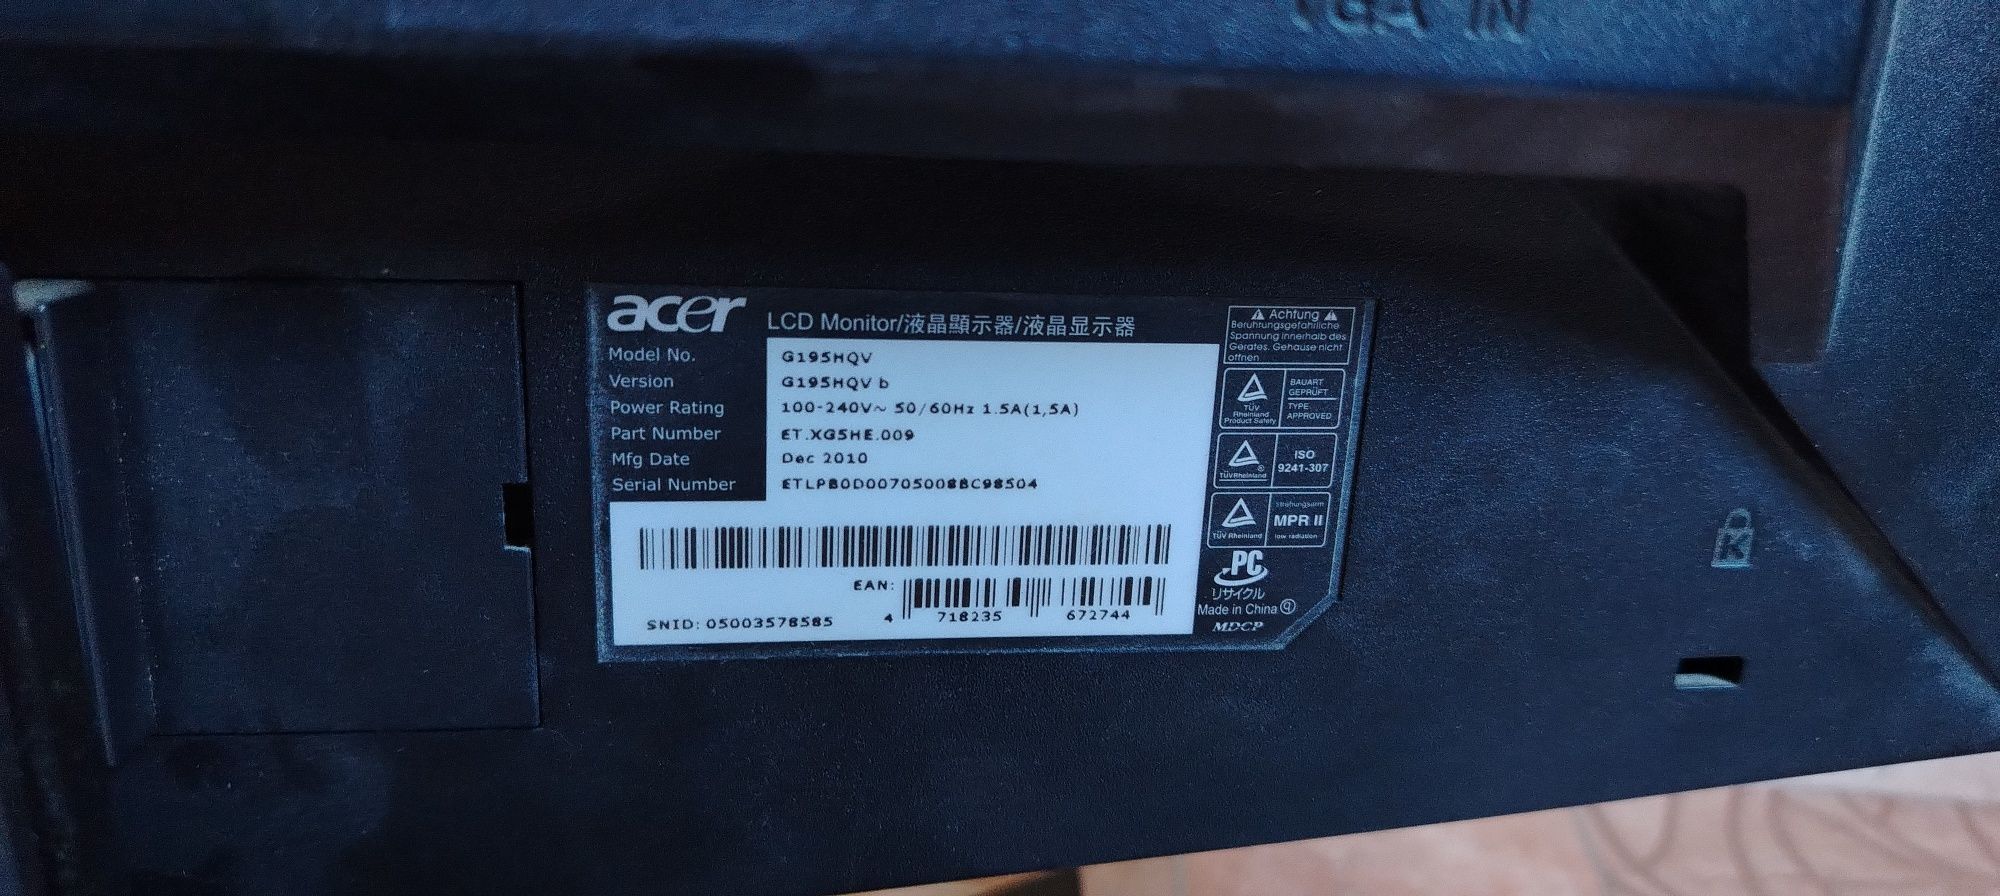 Продам монитор Acer в хорошем состоянии